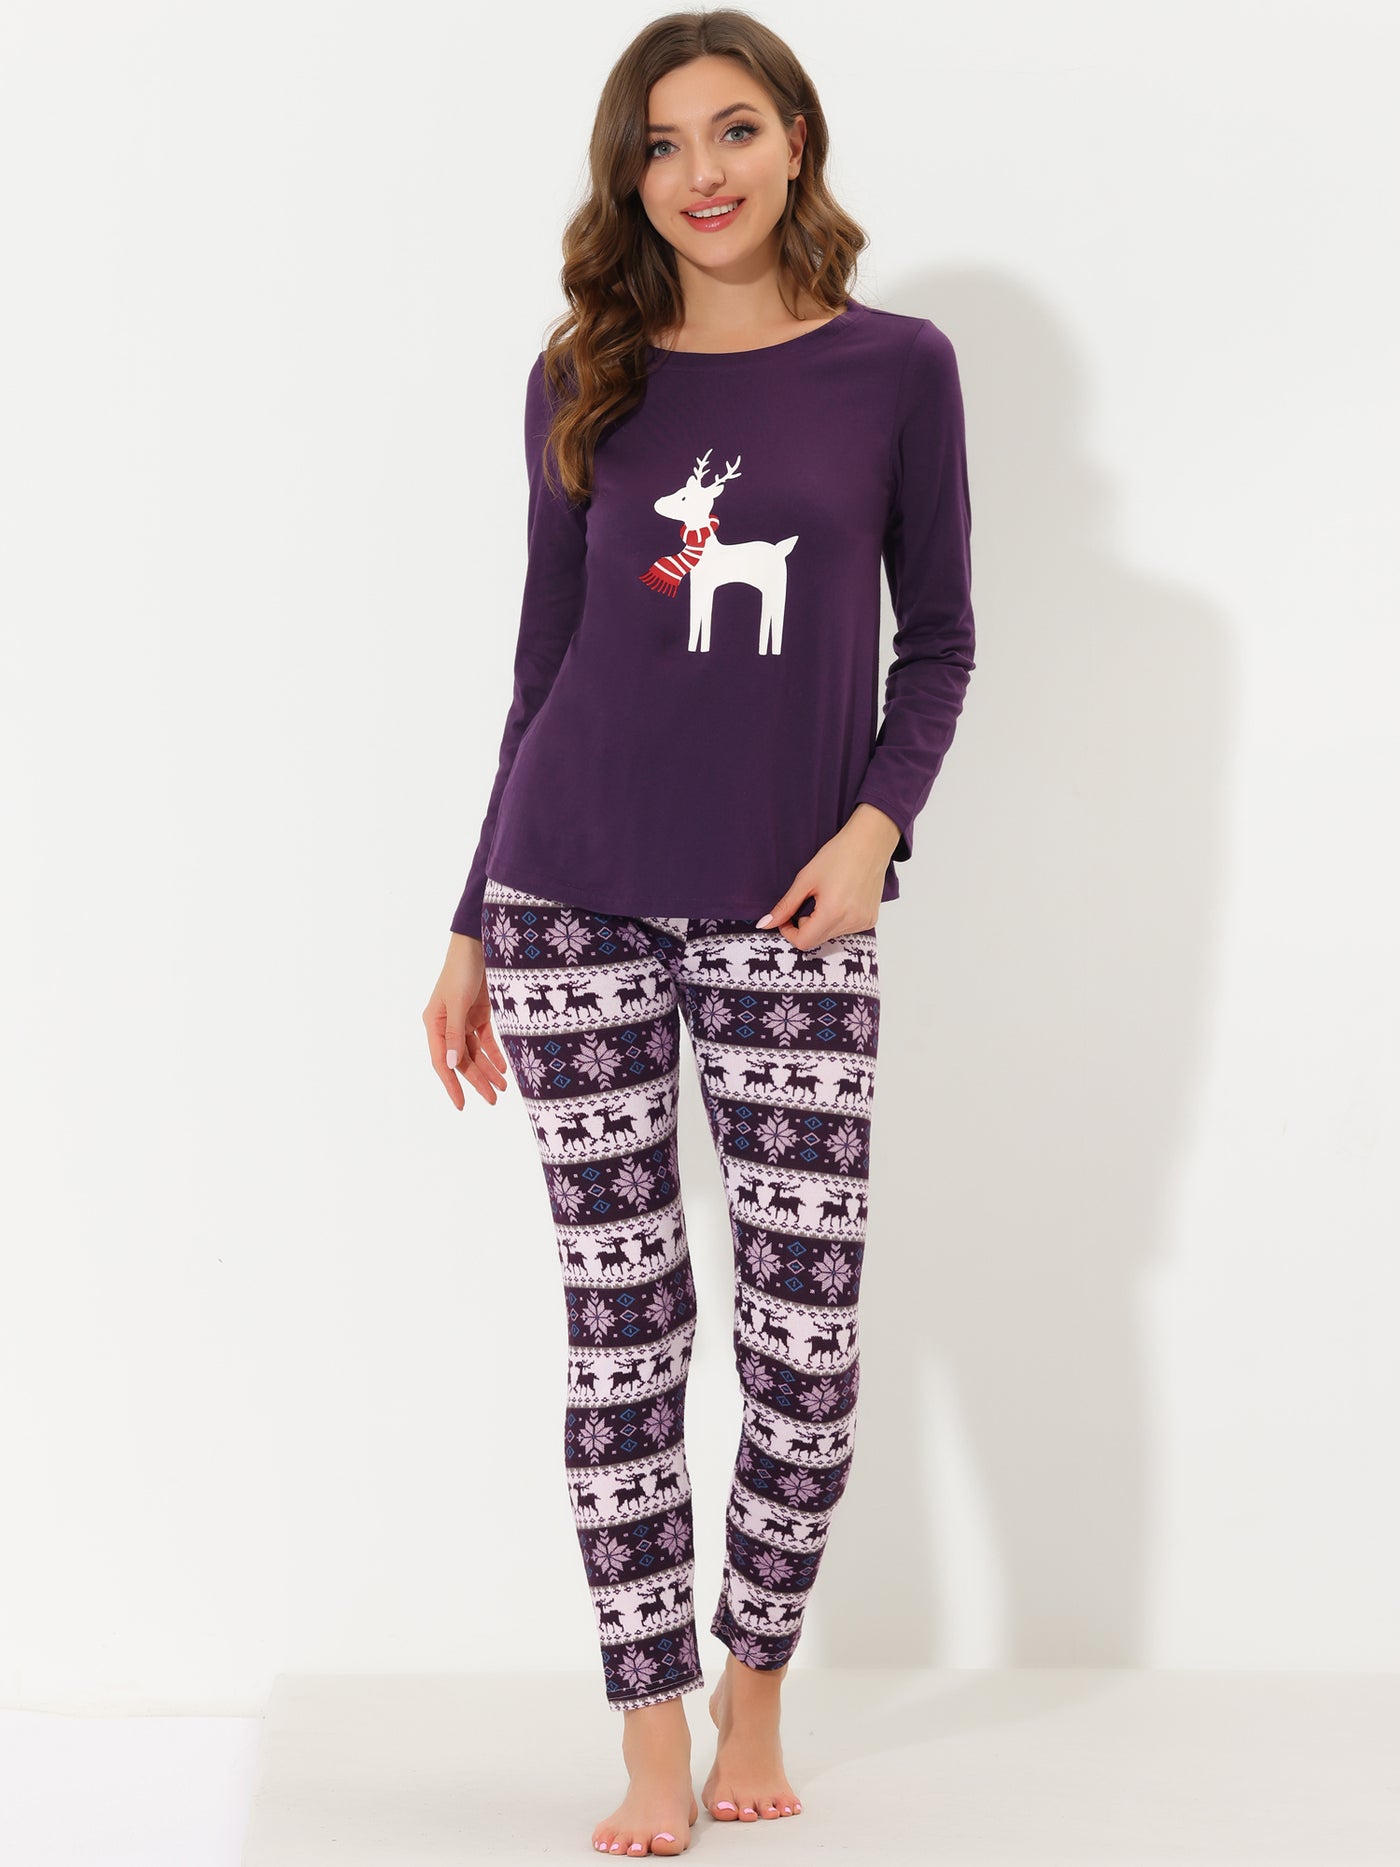 Bublédon Women's Sleepwear Soft Winter Elk Loungewear Pajama Sets